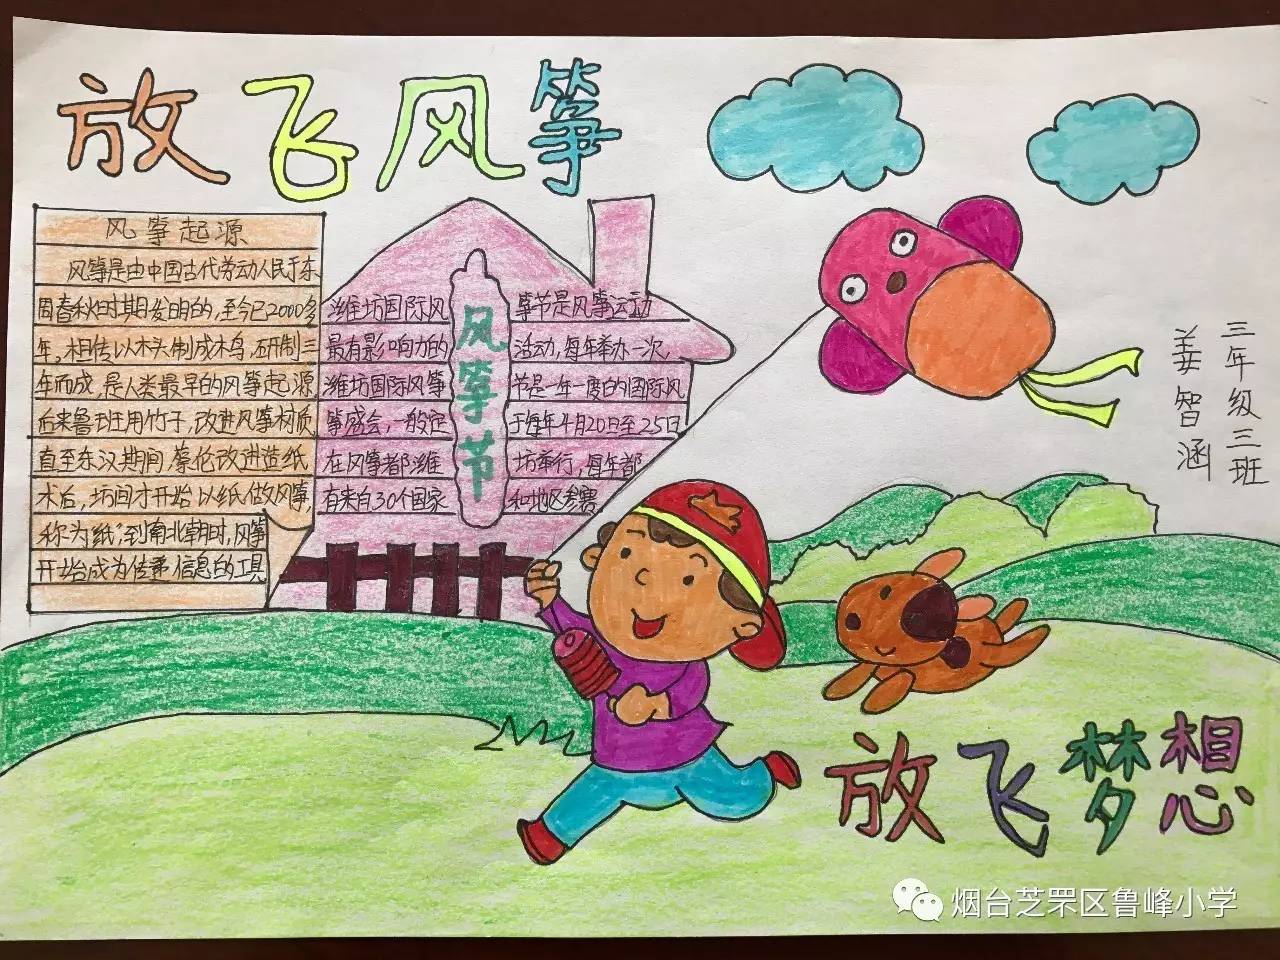 低年级的孩子用绘画表现出对风筝的喜爱,一幅幅漂亮的手抄报则表达了